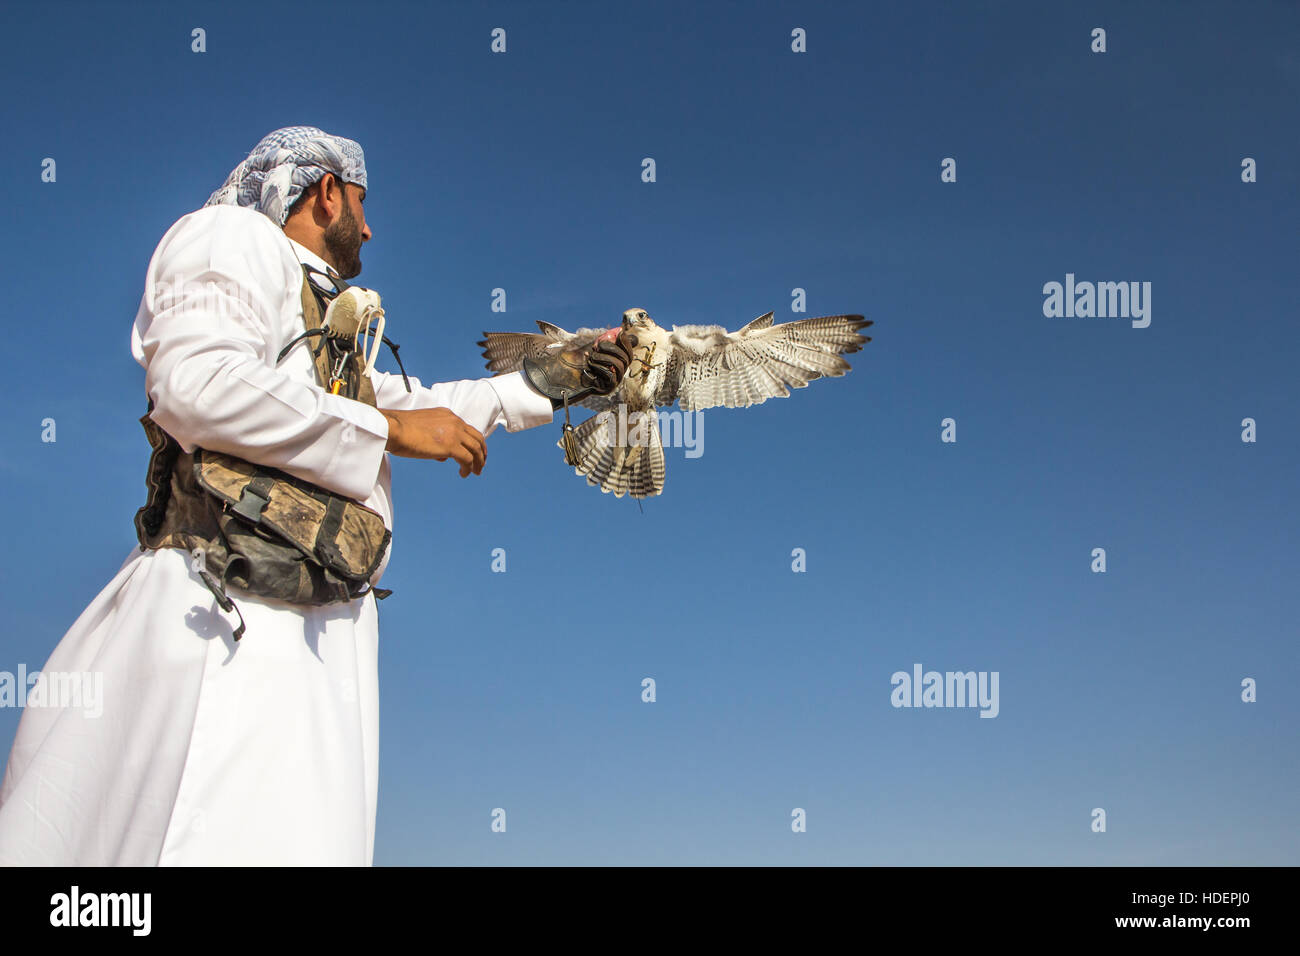 Voce maschile saker falcon (Falco cherrug) con una falconer vestito in tradizionali abiti arabi durante uno spettacolo di falconeria. Dubai, EAU. Foto Stock